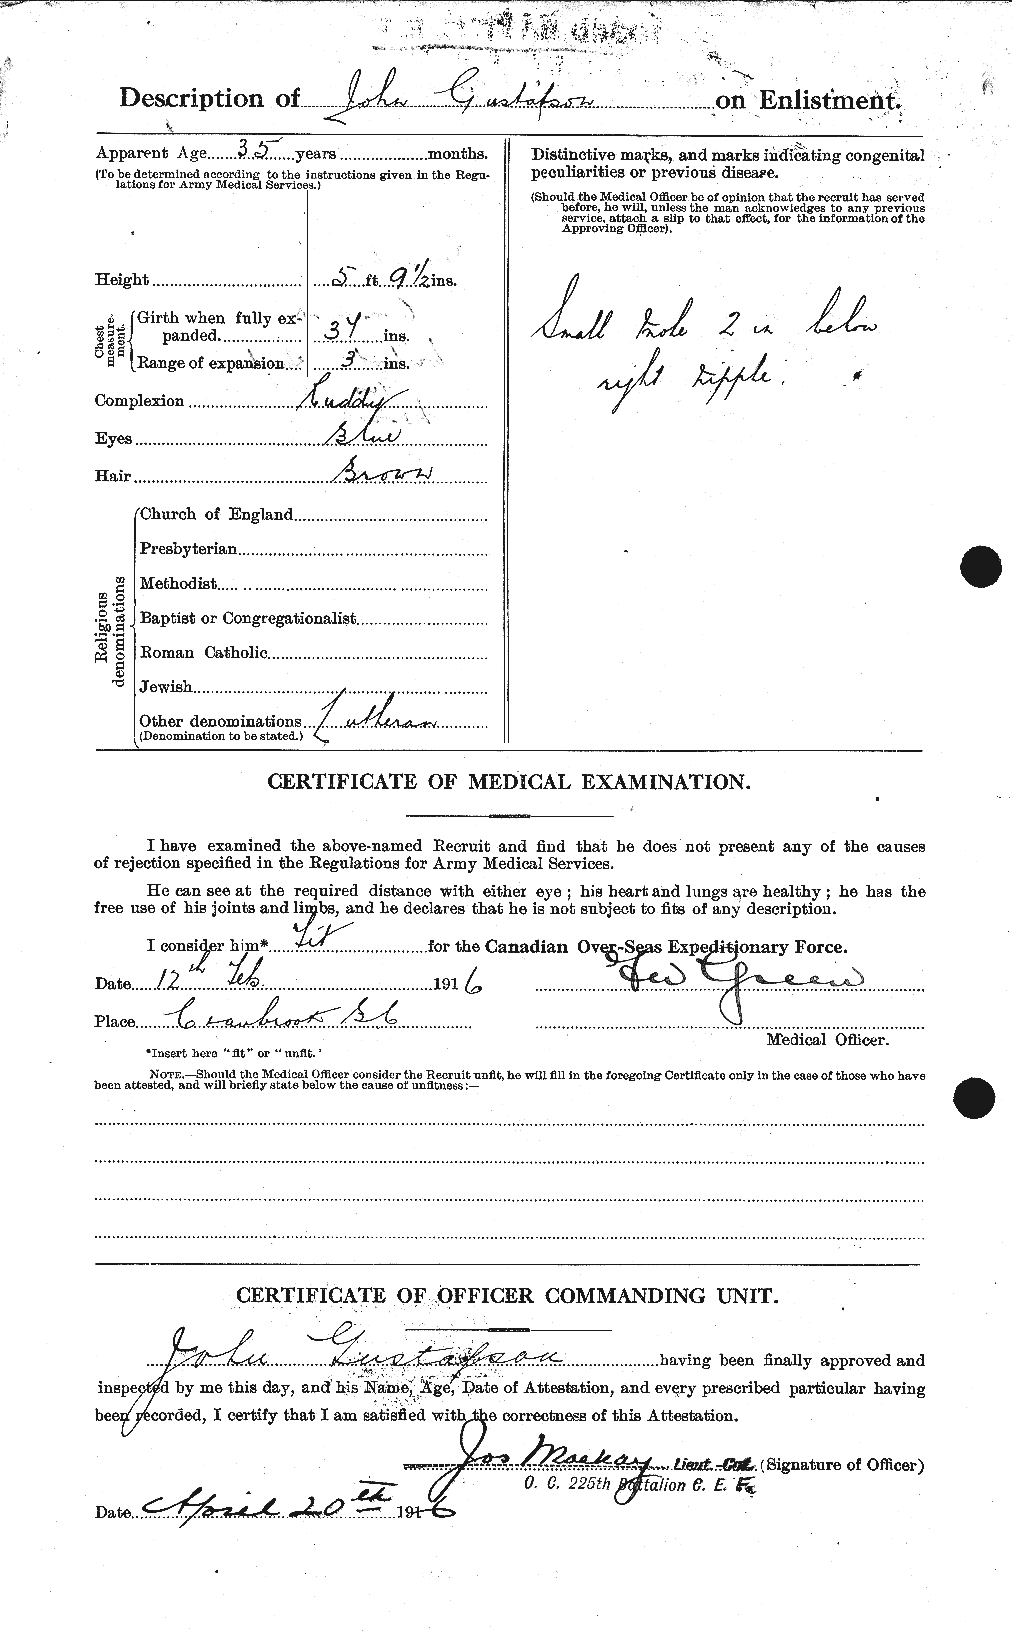 Dossiers du Personnel de la Première Guerre mondiale - CEC 369996b